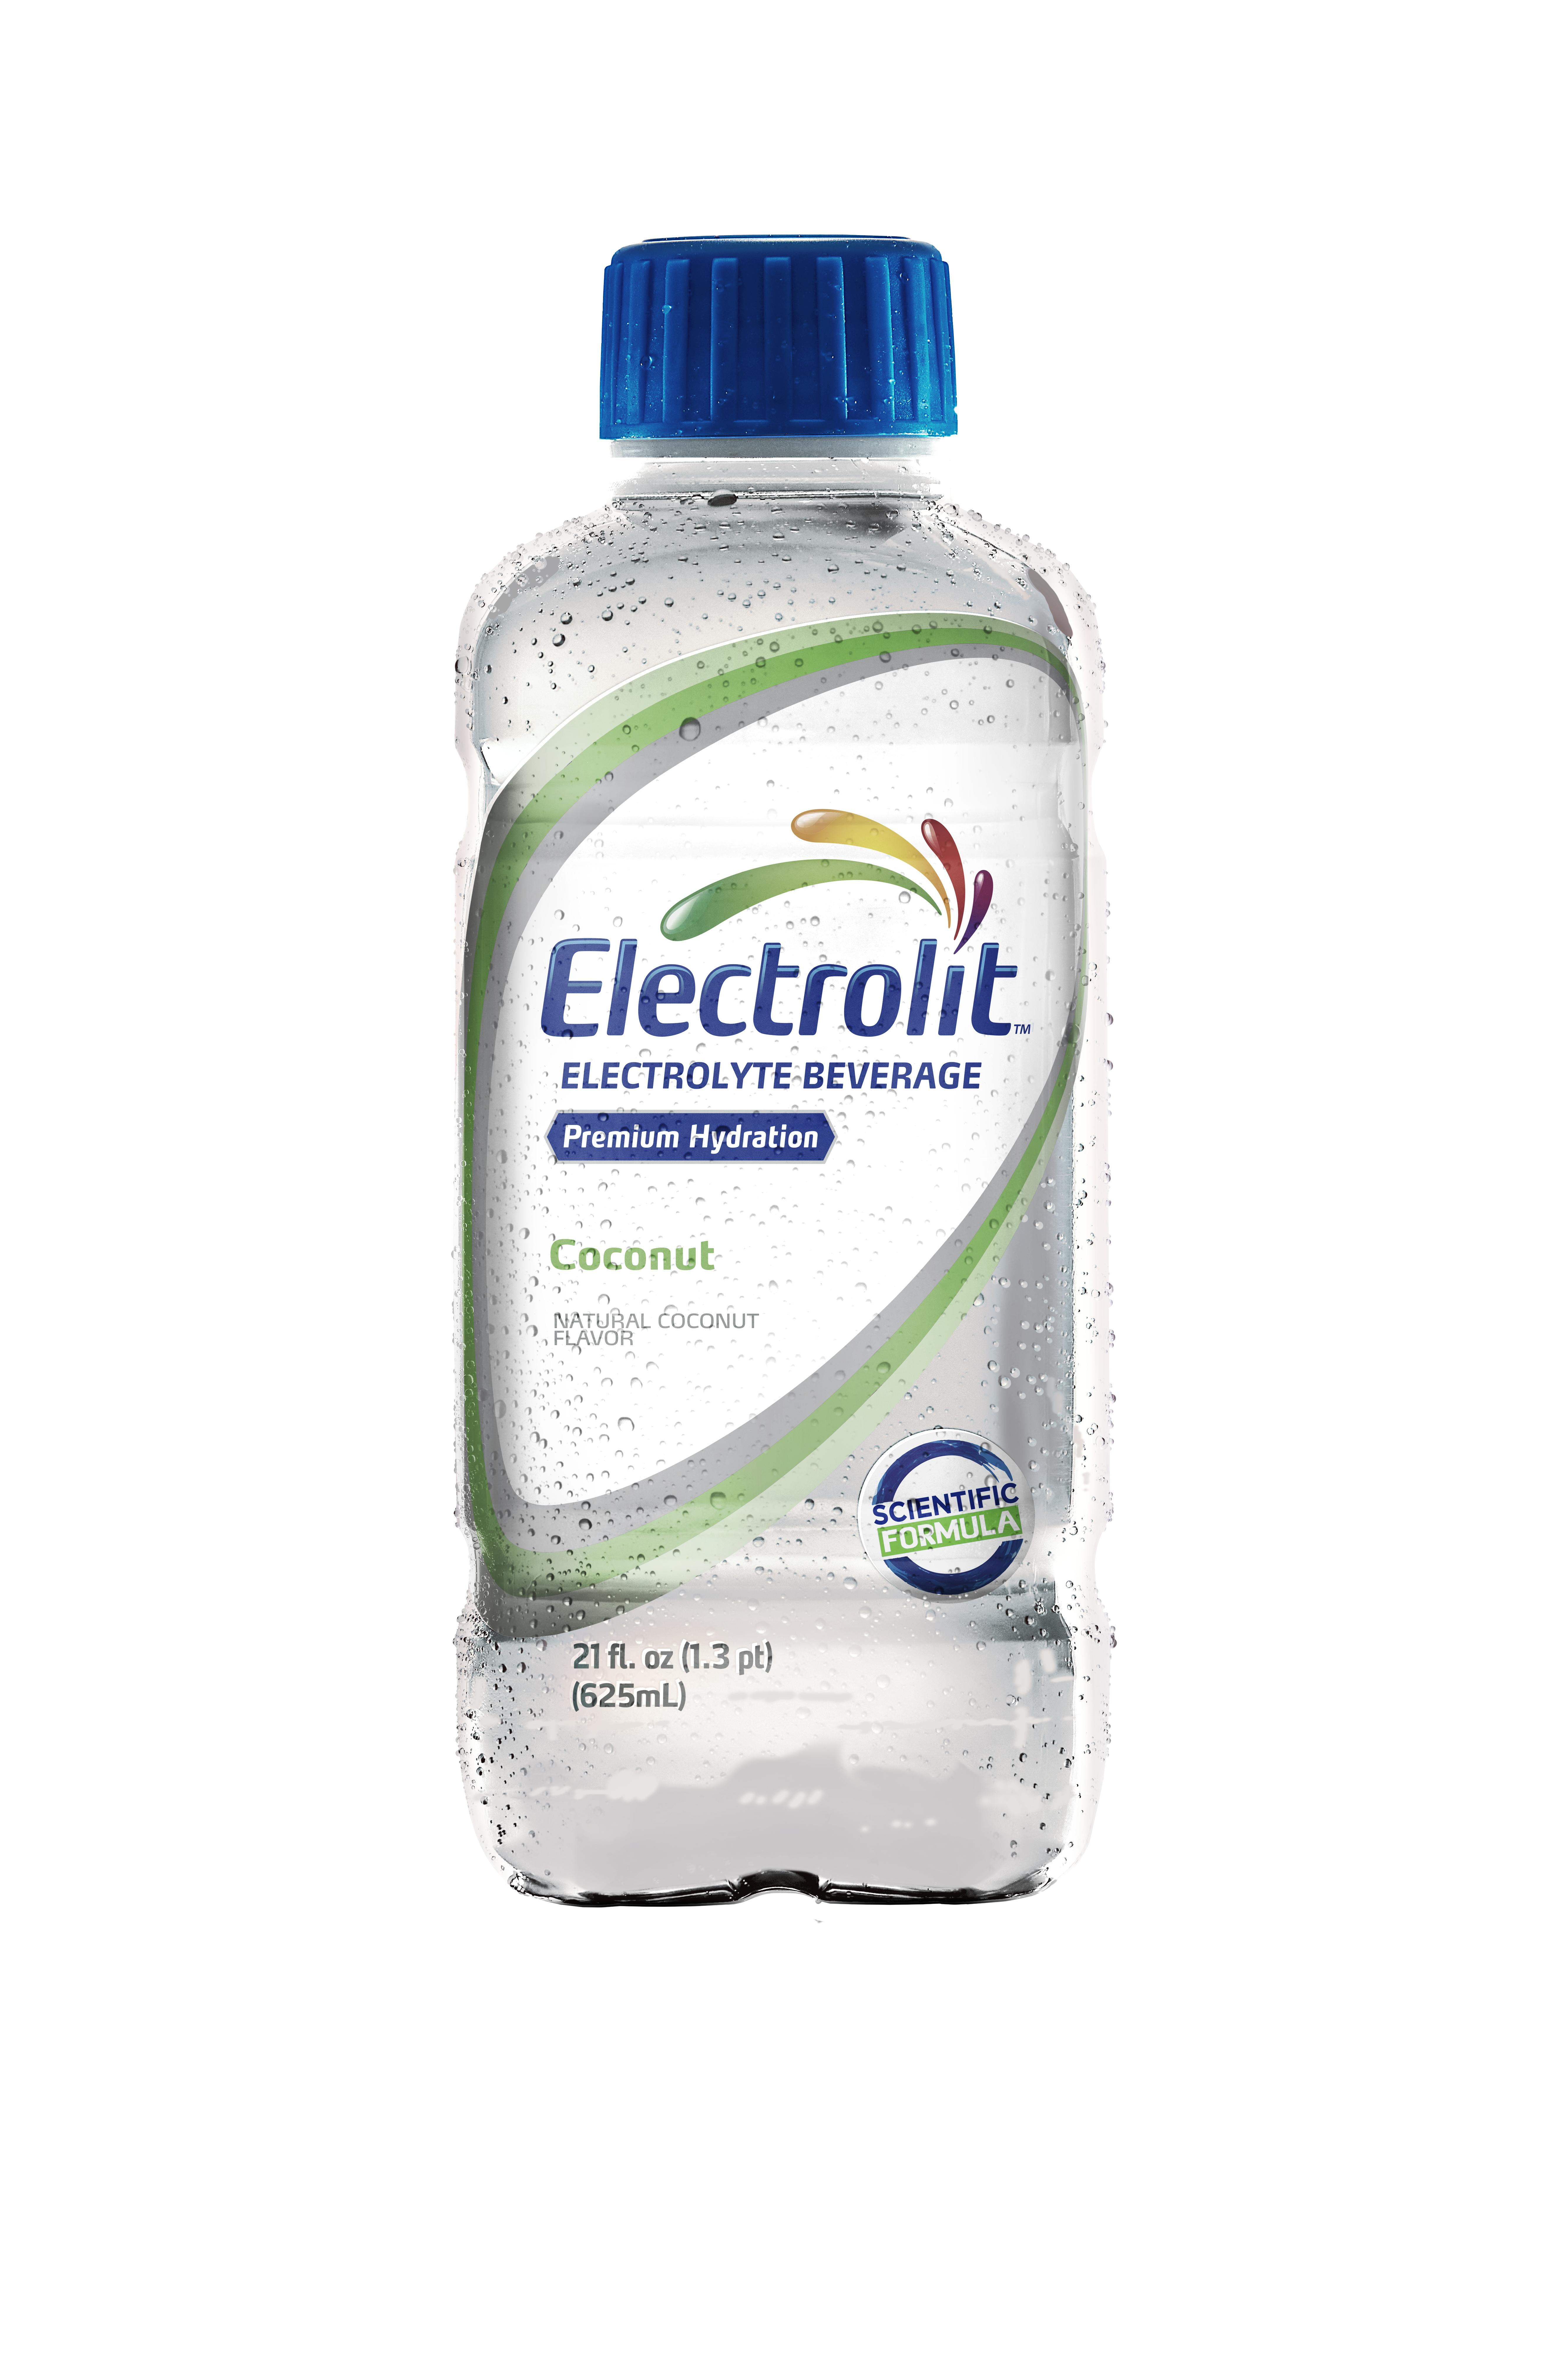 Electrolit Hydration Drink, Natural Coconut Flavor,  FL OZ 